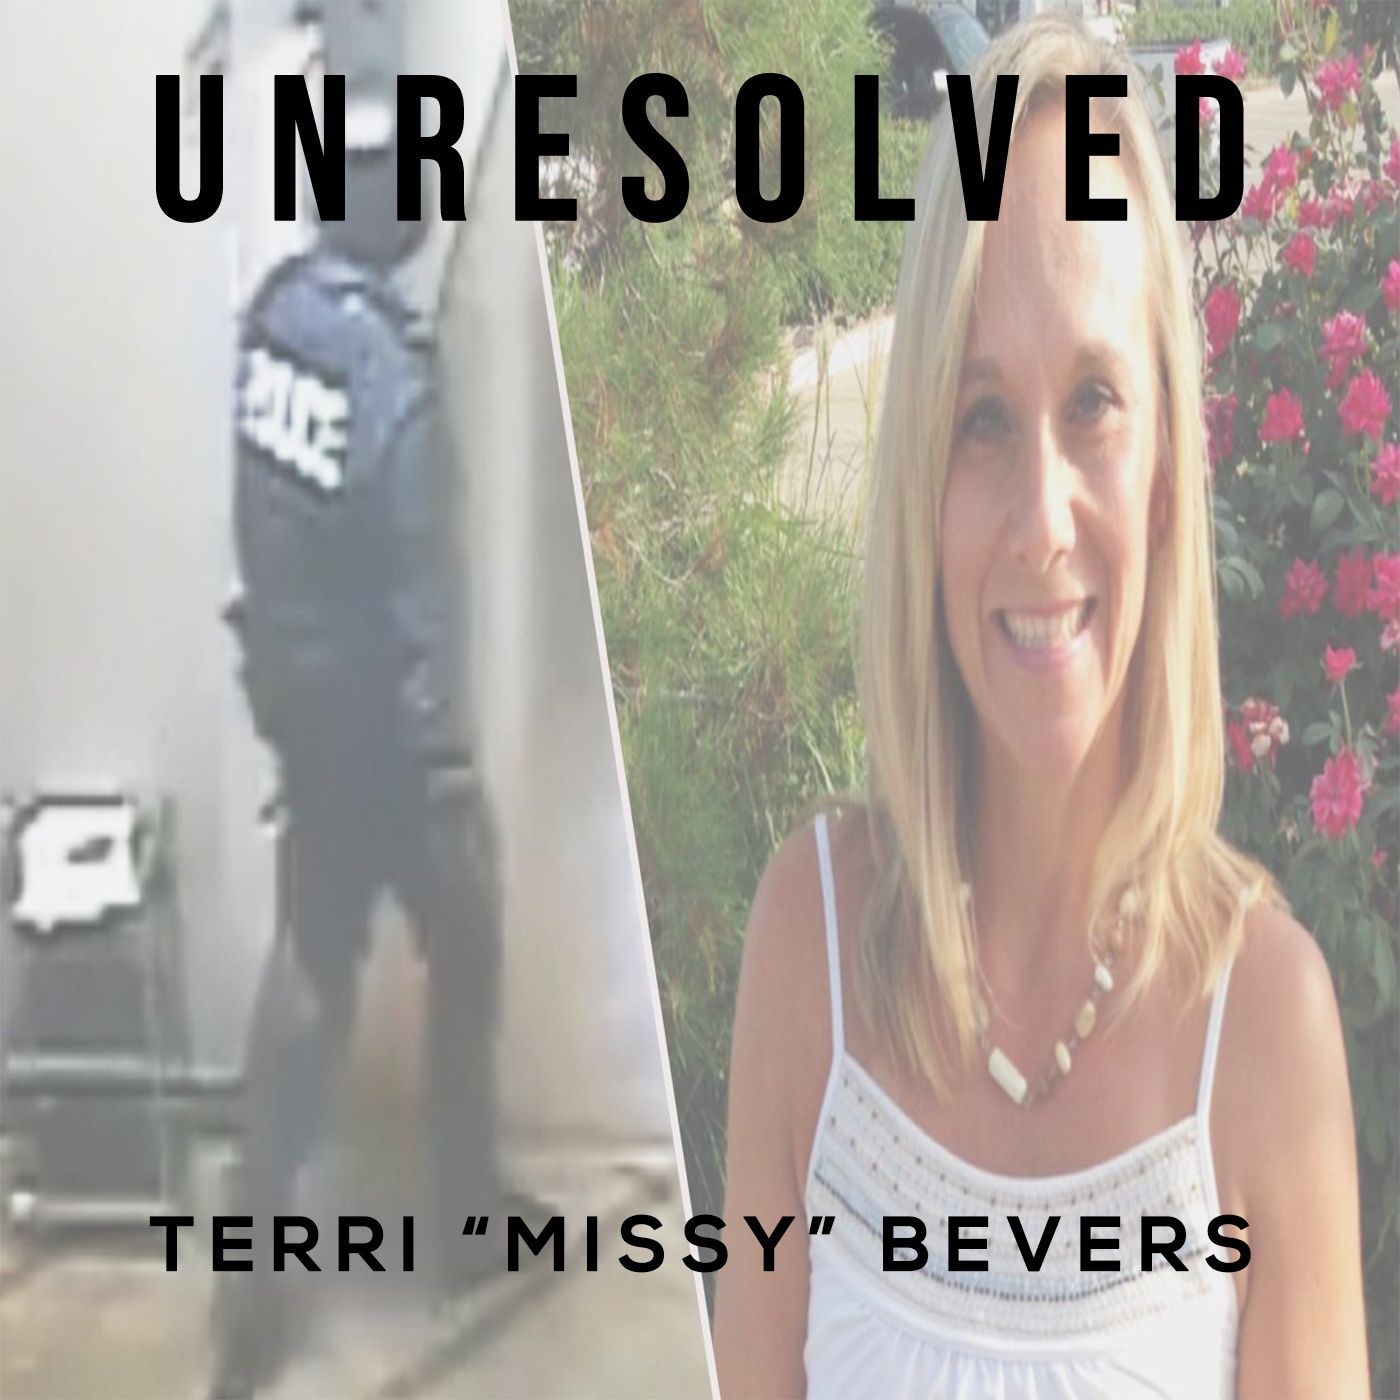 Terri ’Missy’ Bevers